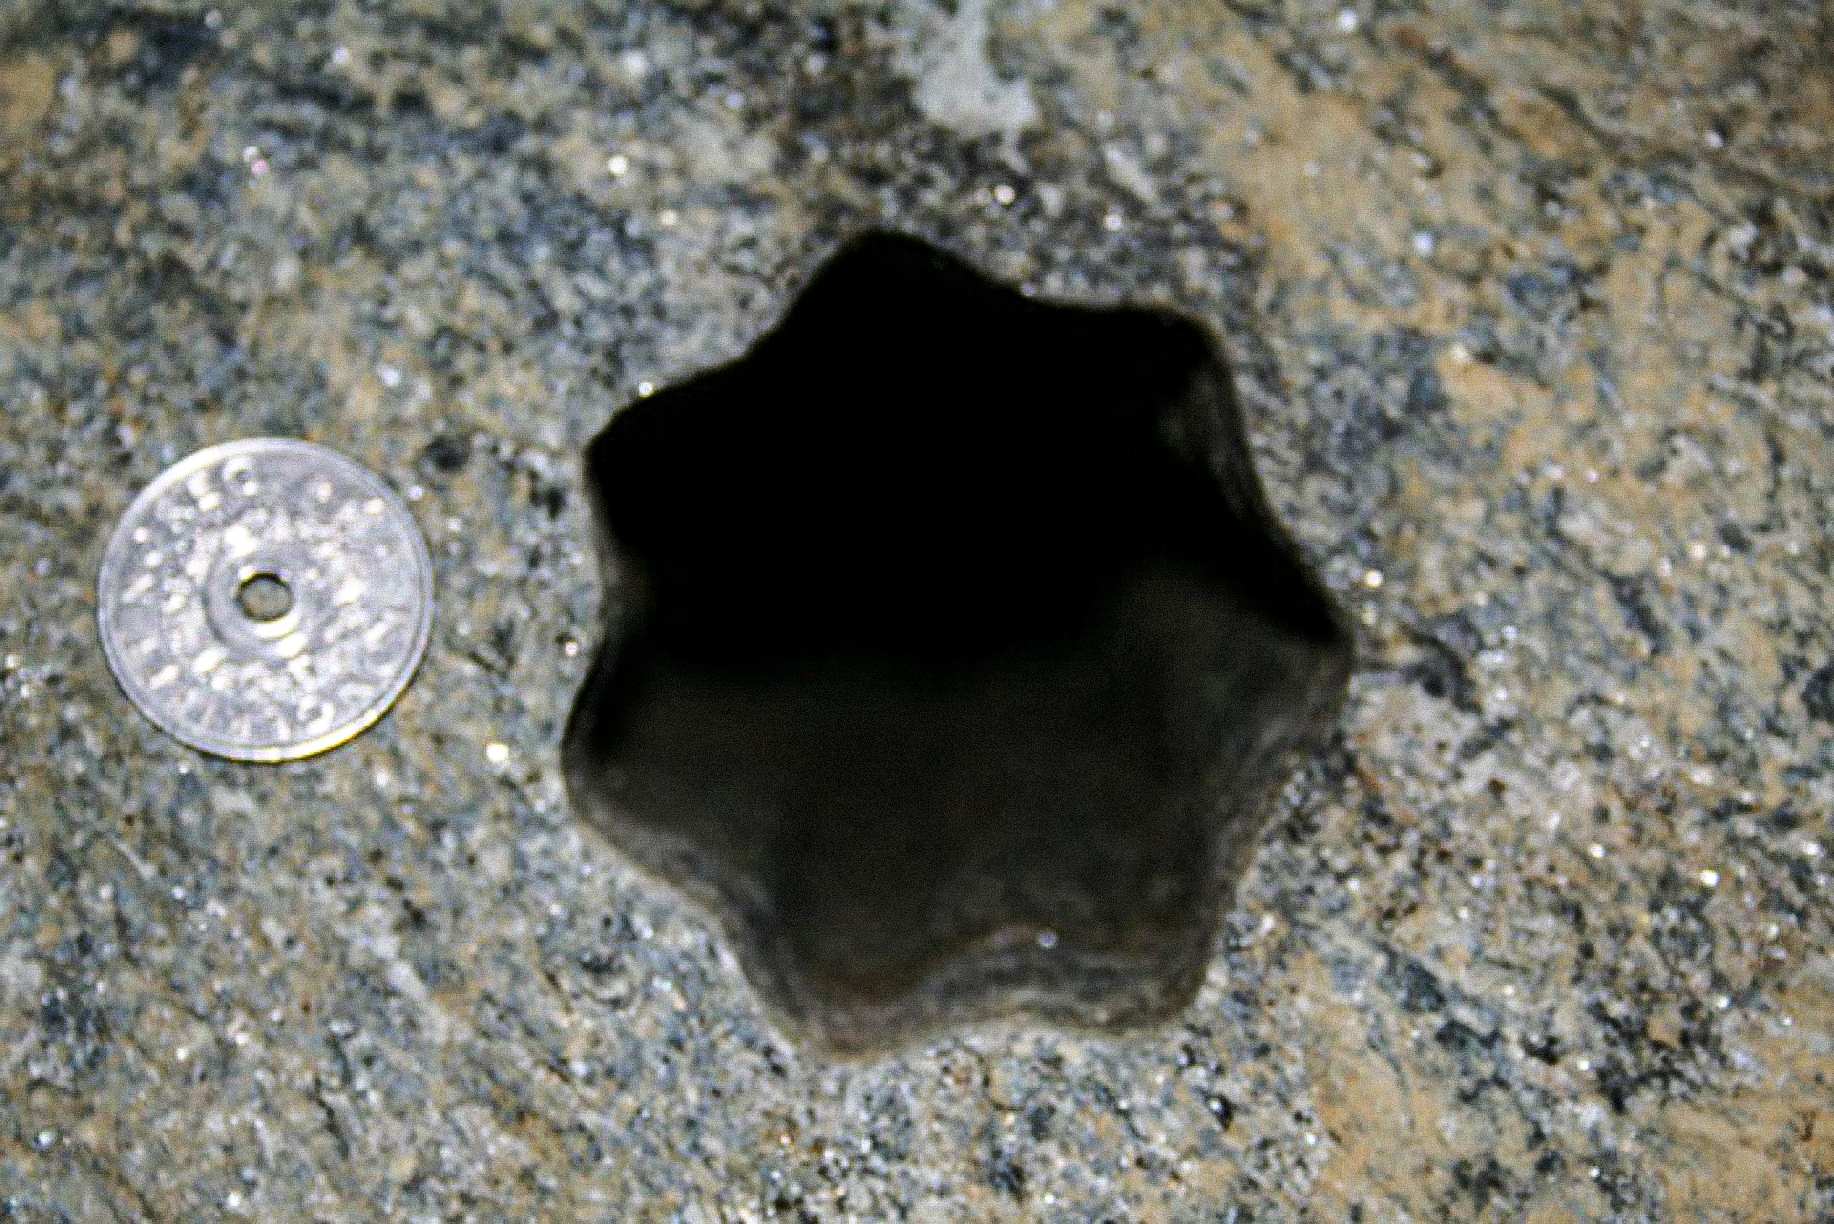 Selle tähekujulise augu (seitsme küljega) leidsid töövõtjad reedel, 30. novembril 2007 Norras Voldas. Norra 5-kroonise mündi läbimõõt on 25 mm. Ava läbimõõt on umbes 65-70 mm.